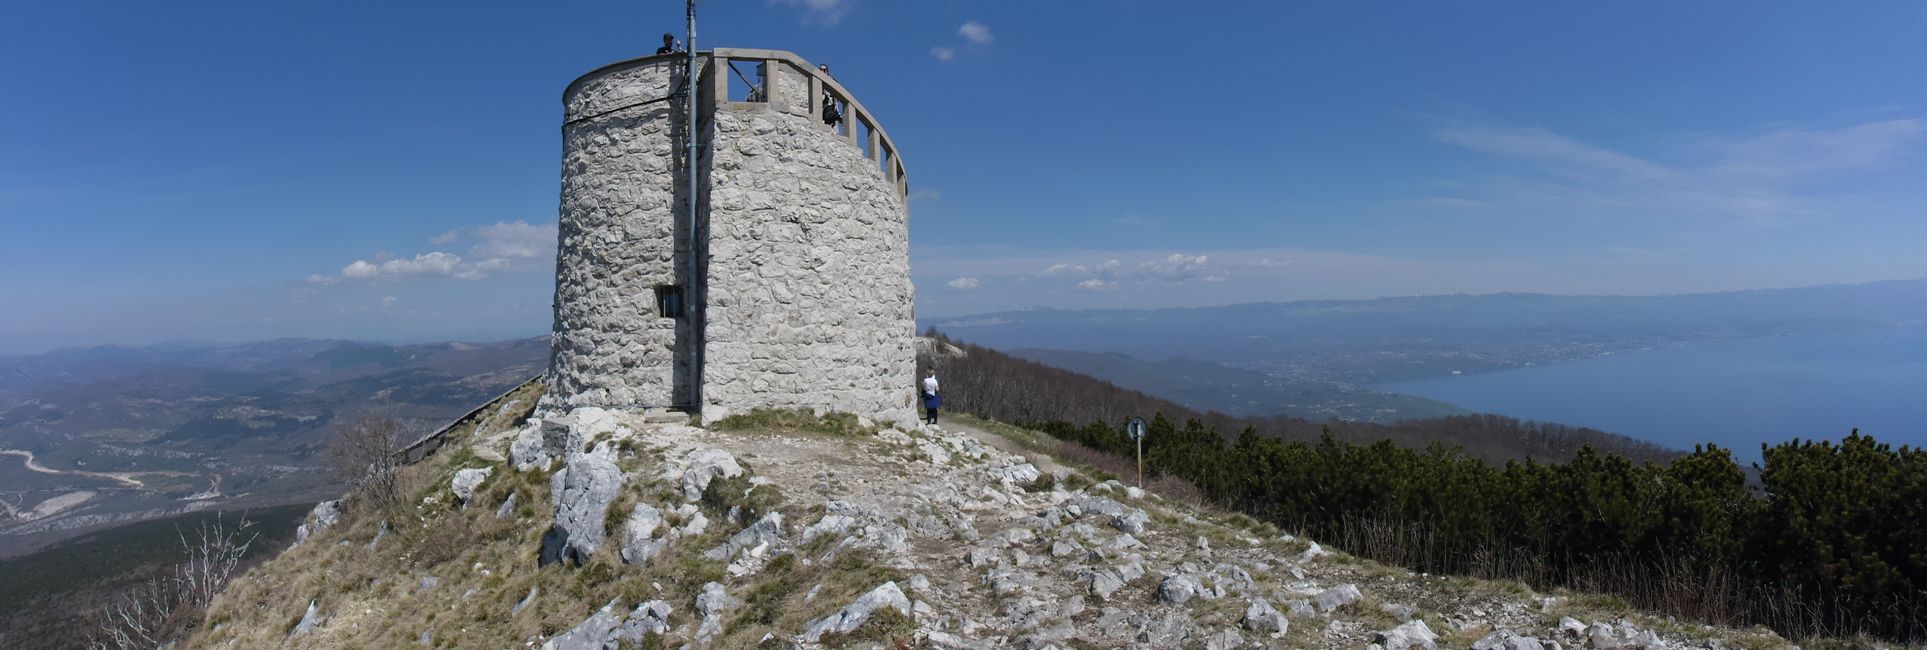 Der Gipfelturm aus der KuK Zeit